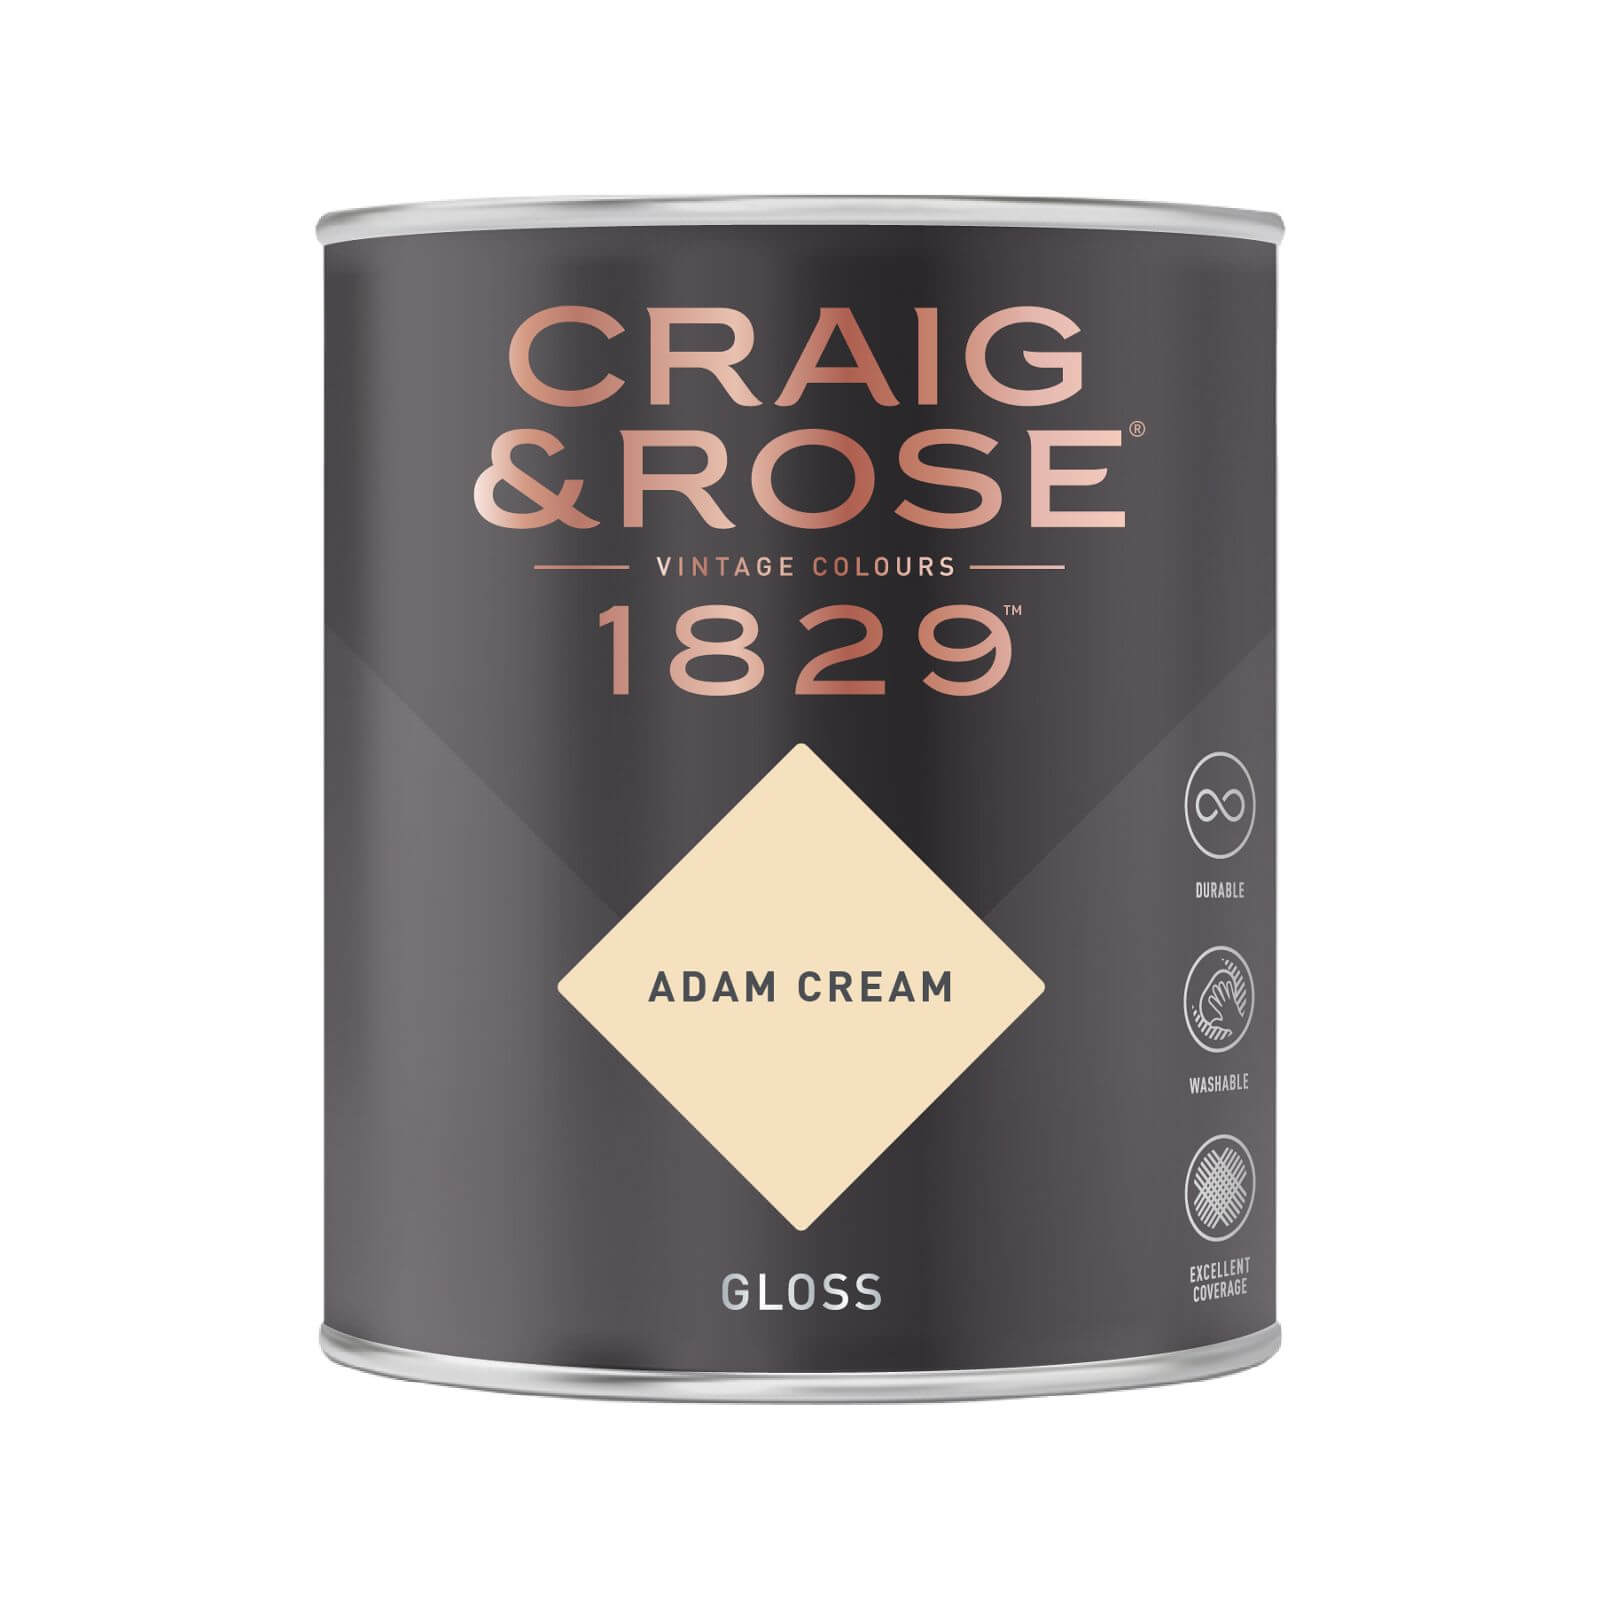 Craig & Rose 1829 Gloss Paint Adam Cream - 750ml